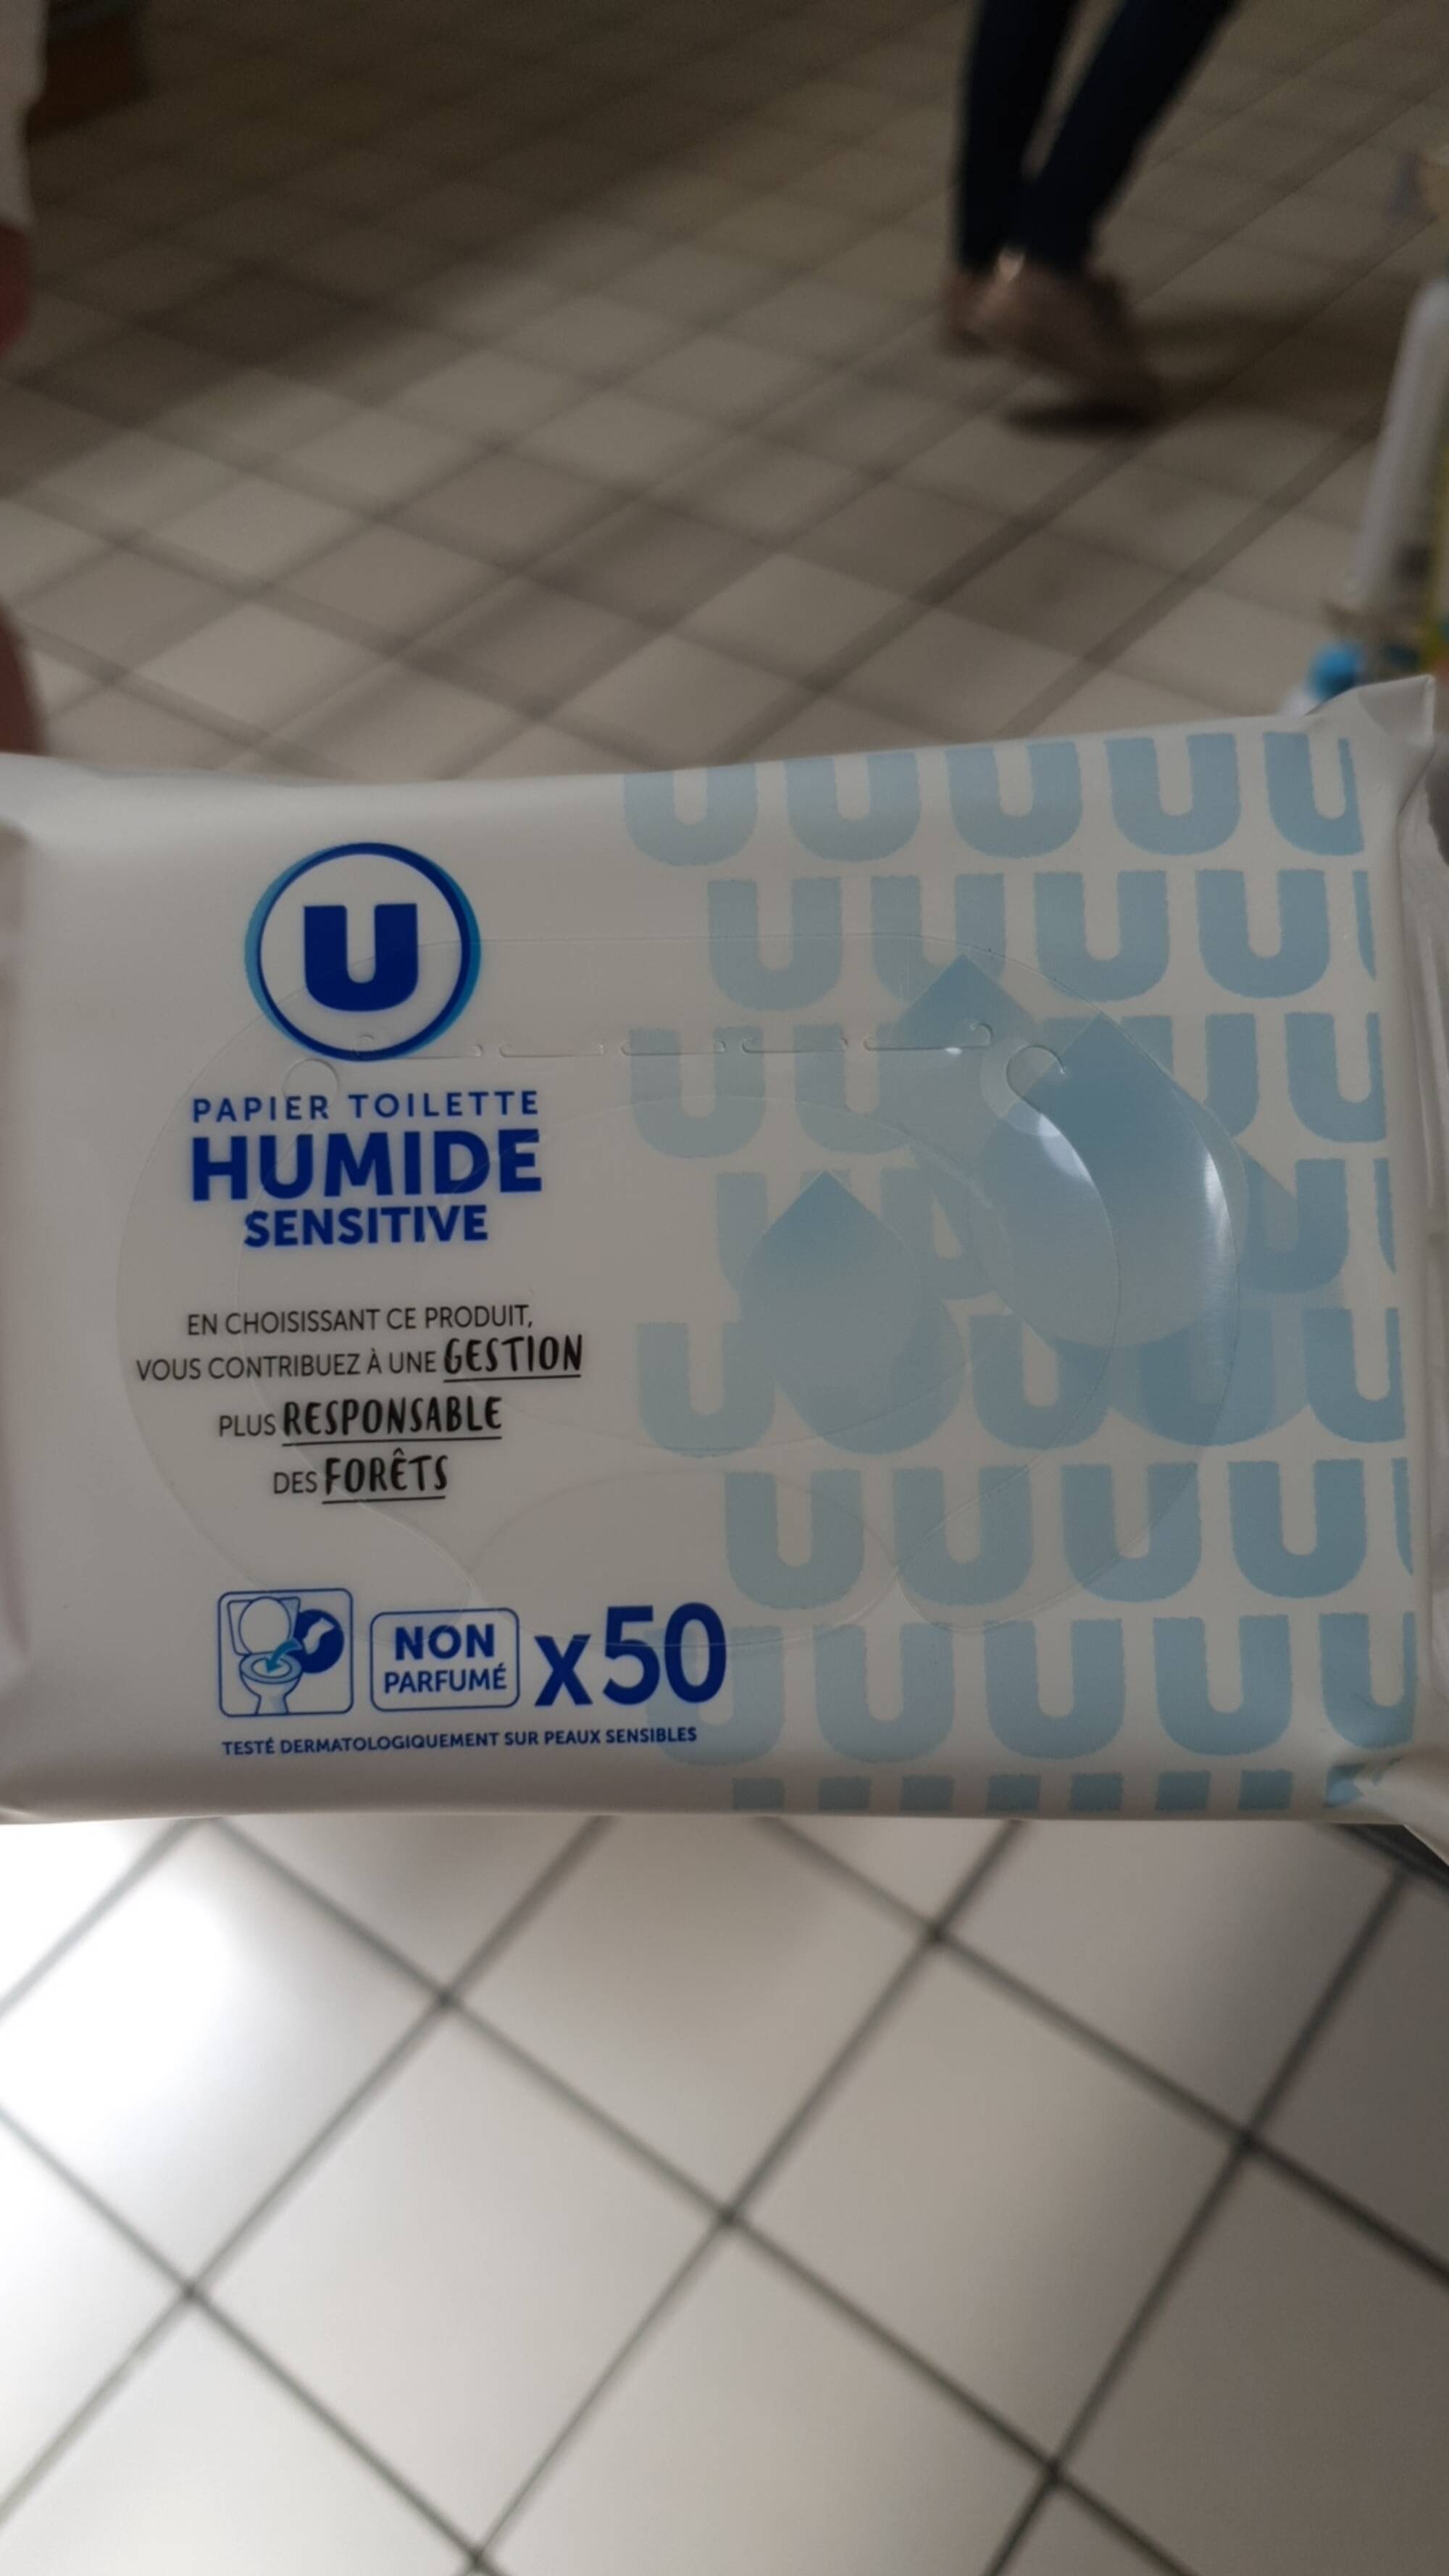 Composition U Papier toilette humide sensitive - UFC-Que Choisir